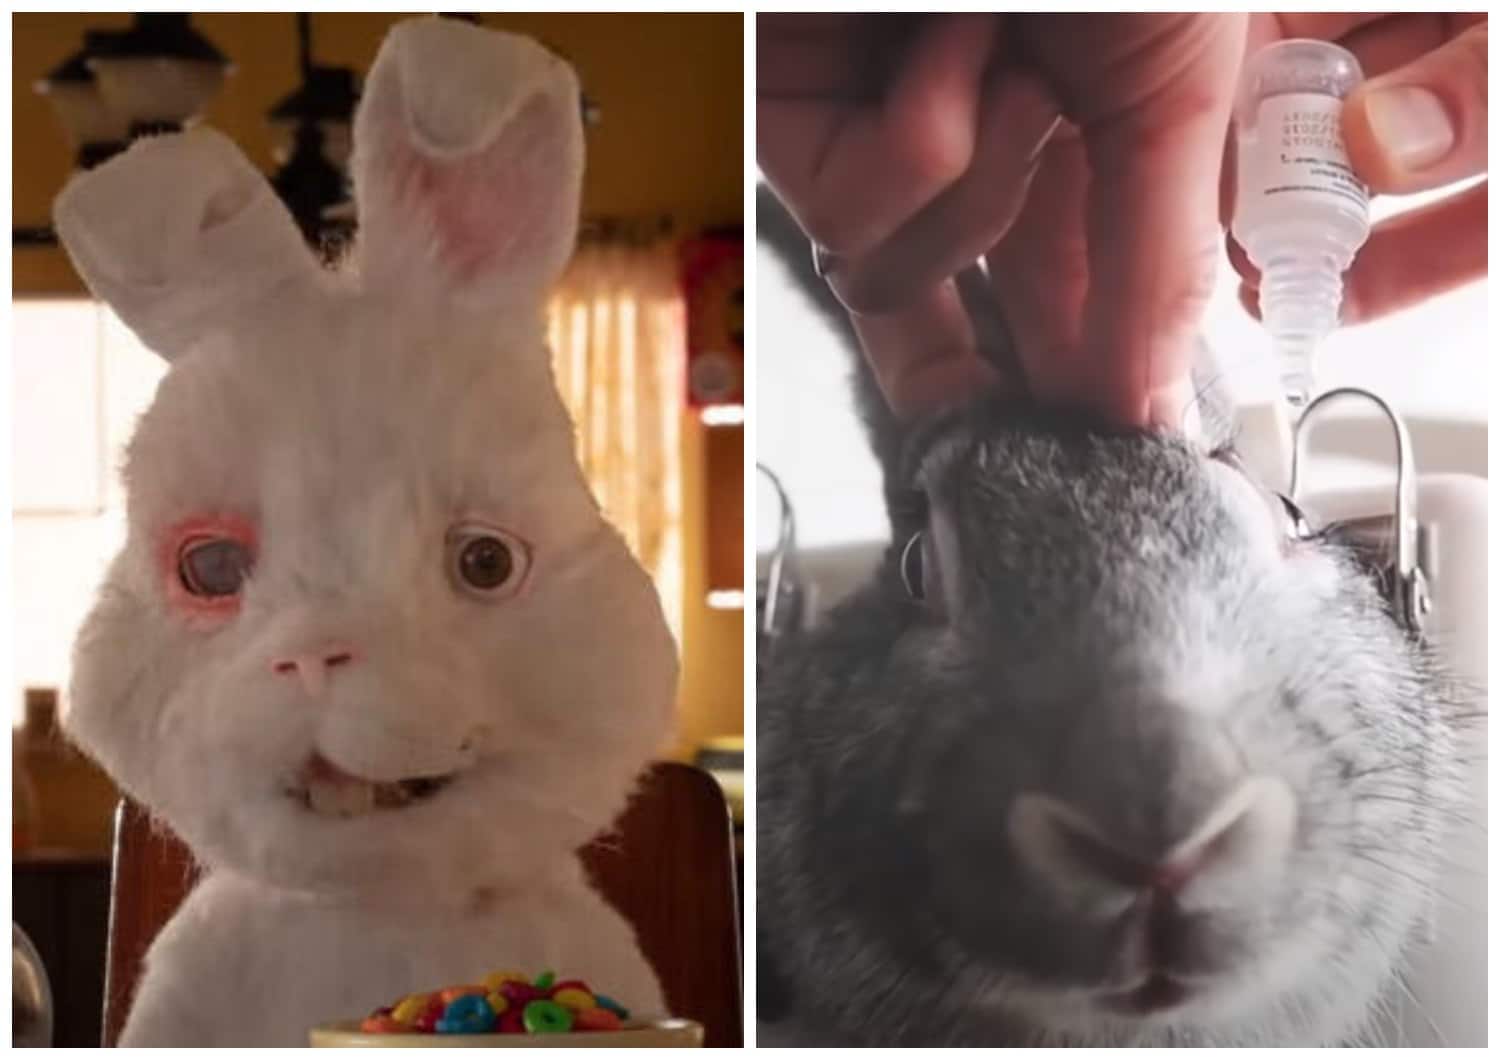 Save Ralph'in Gerçek Yüzü ve Tavşanların Deneylerde Kullanılma Nedeni